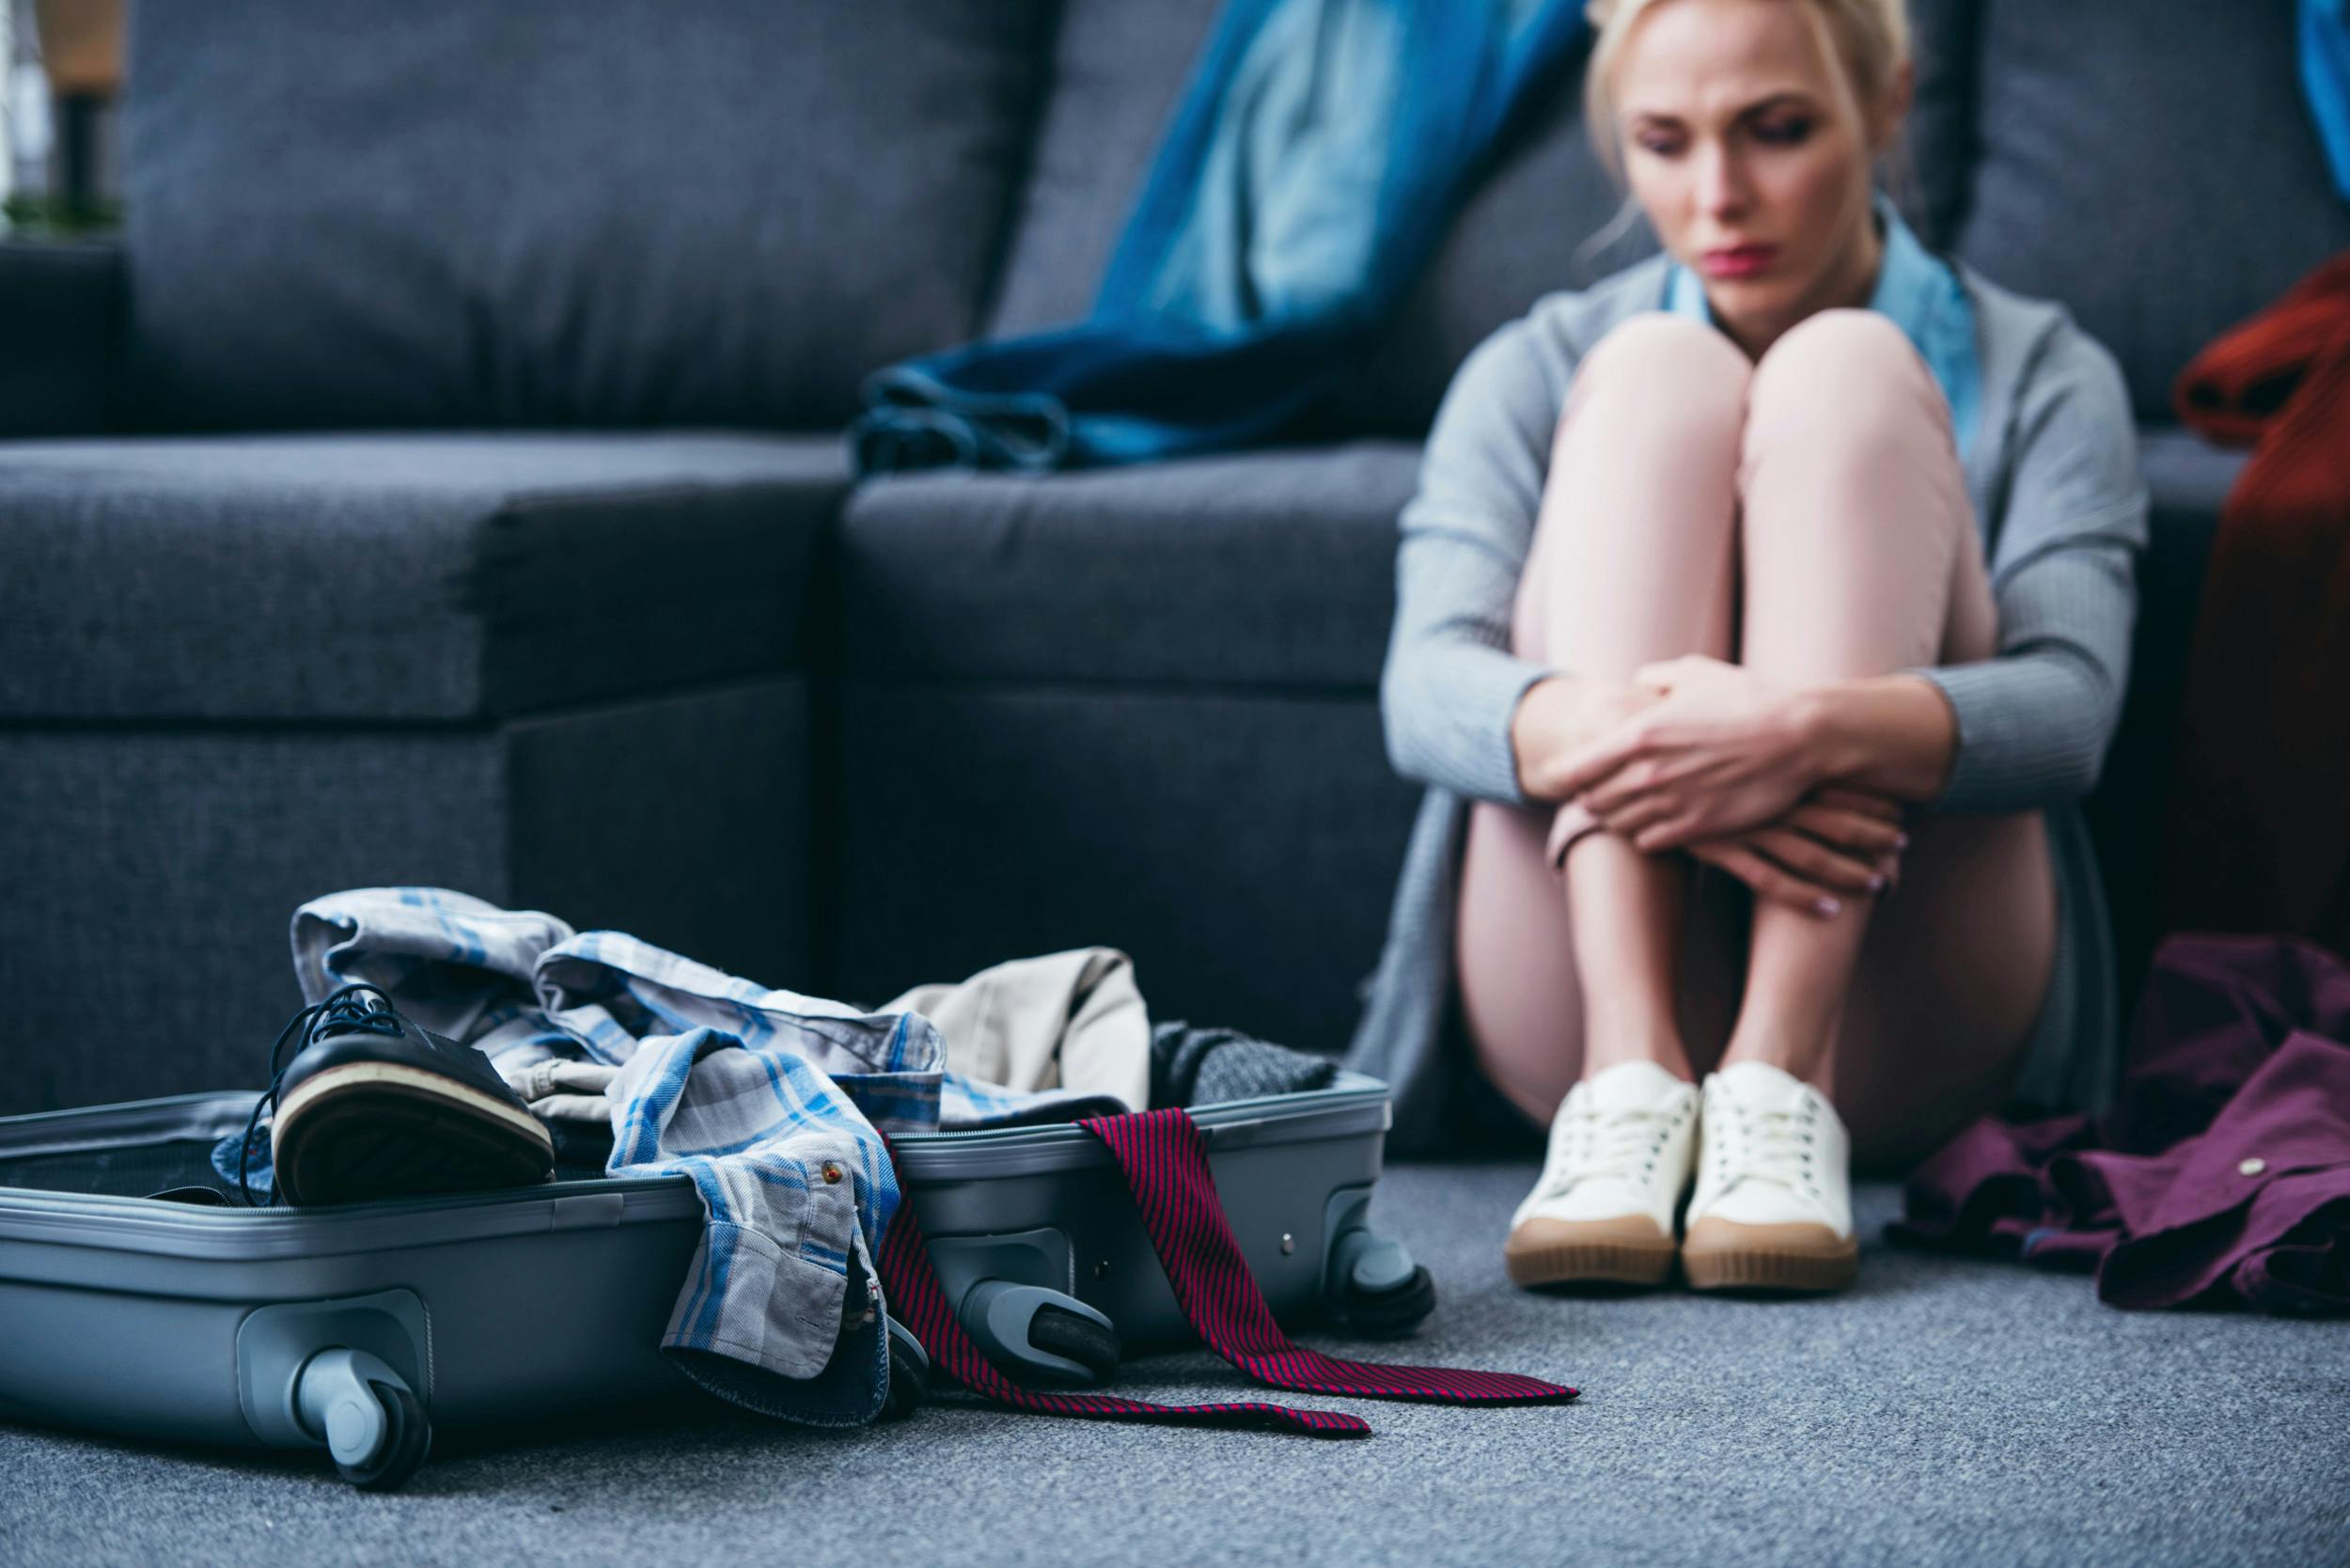 Ung kvinde sidder på gulvet ved siden af en kuffert fyldt med tøj